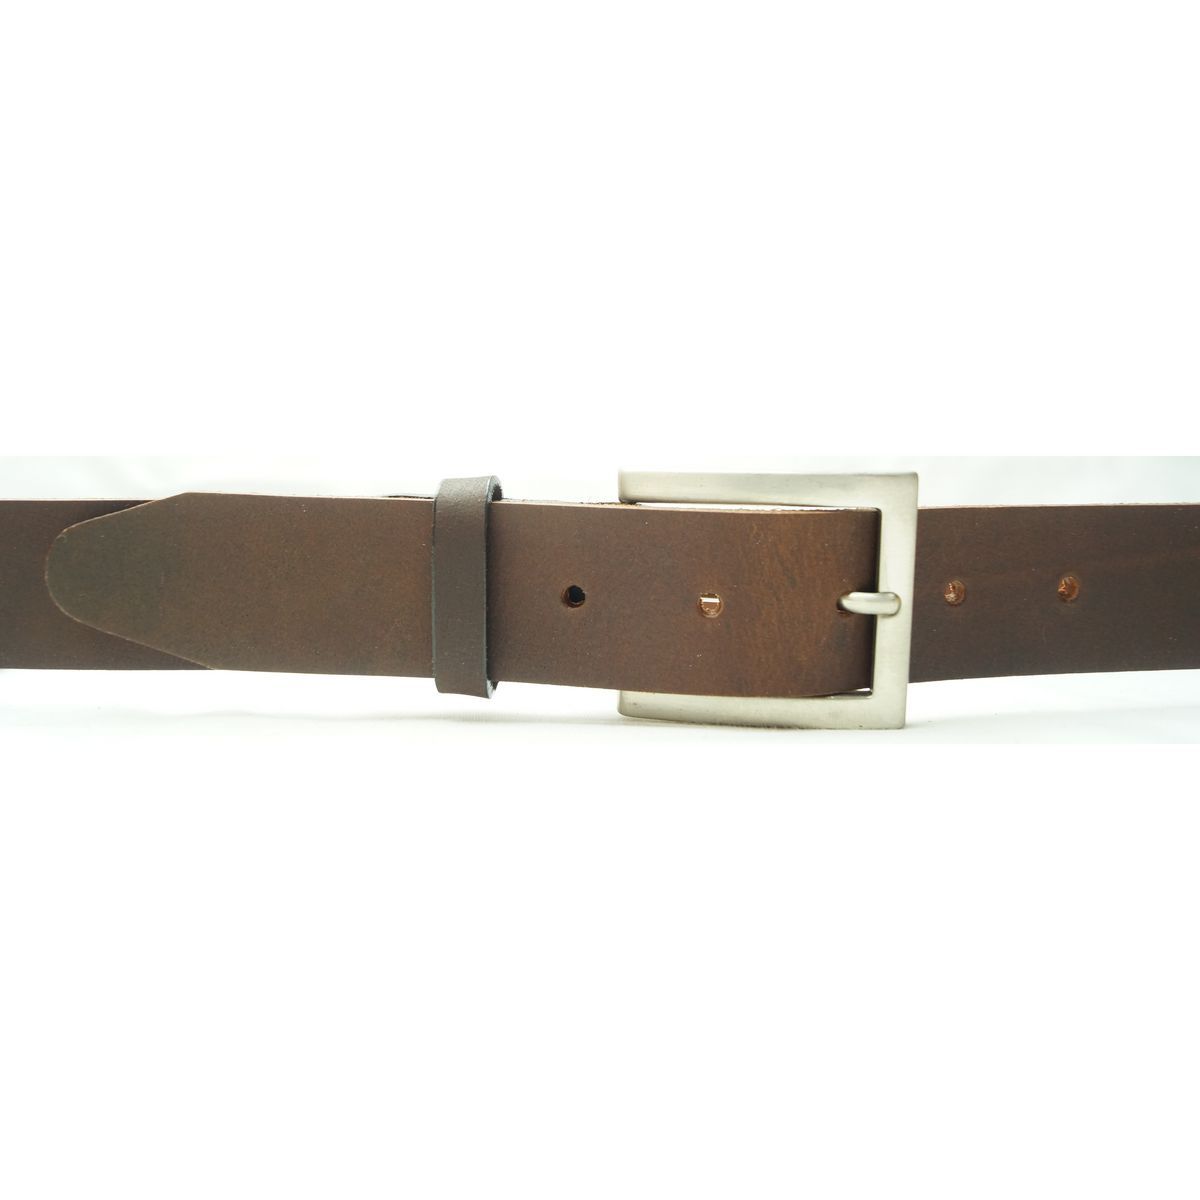 Læder Bælte - John - Mørkebrunt - Bælte fra The Leather Belt Co. hos The Prince Webshop